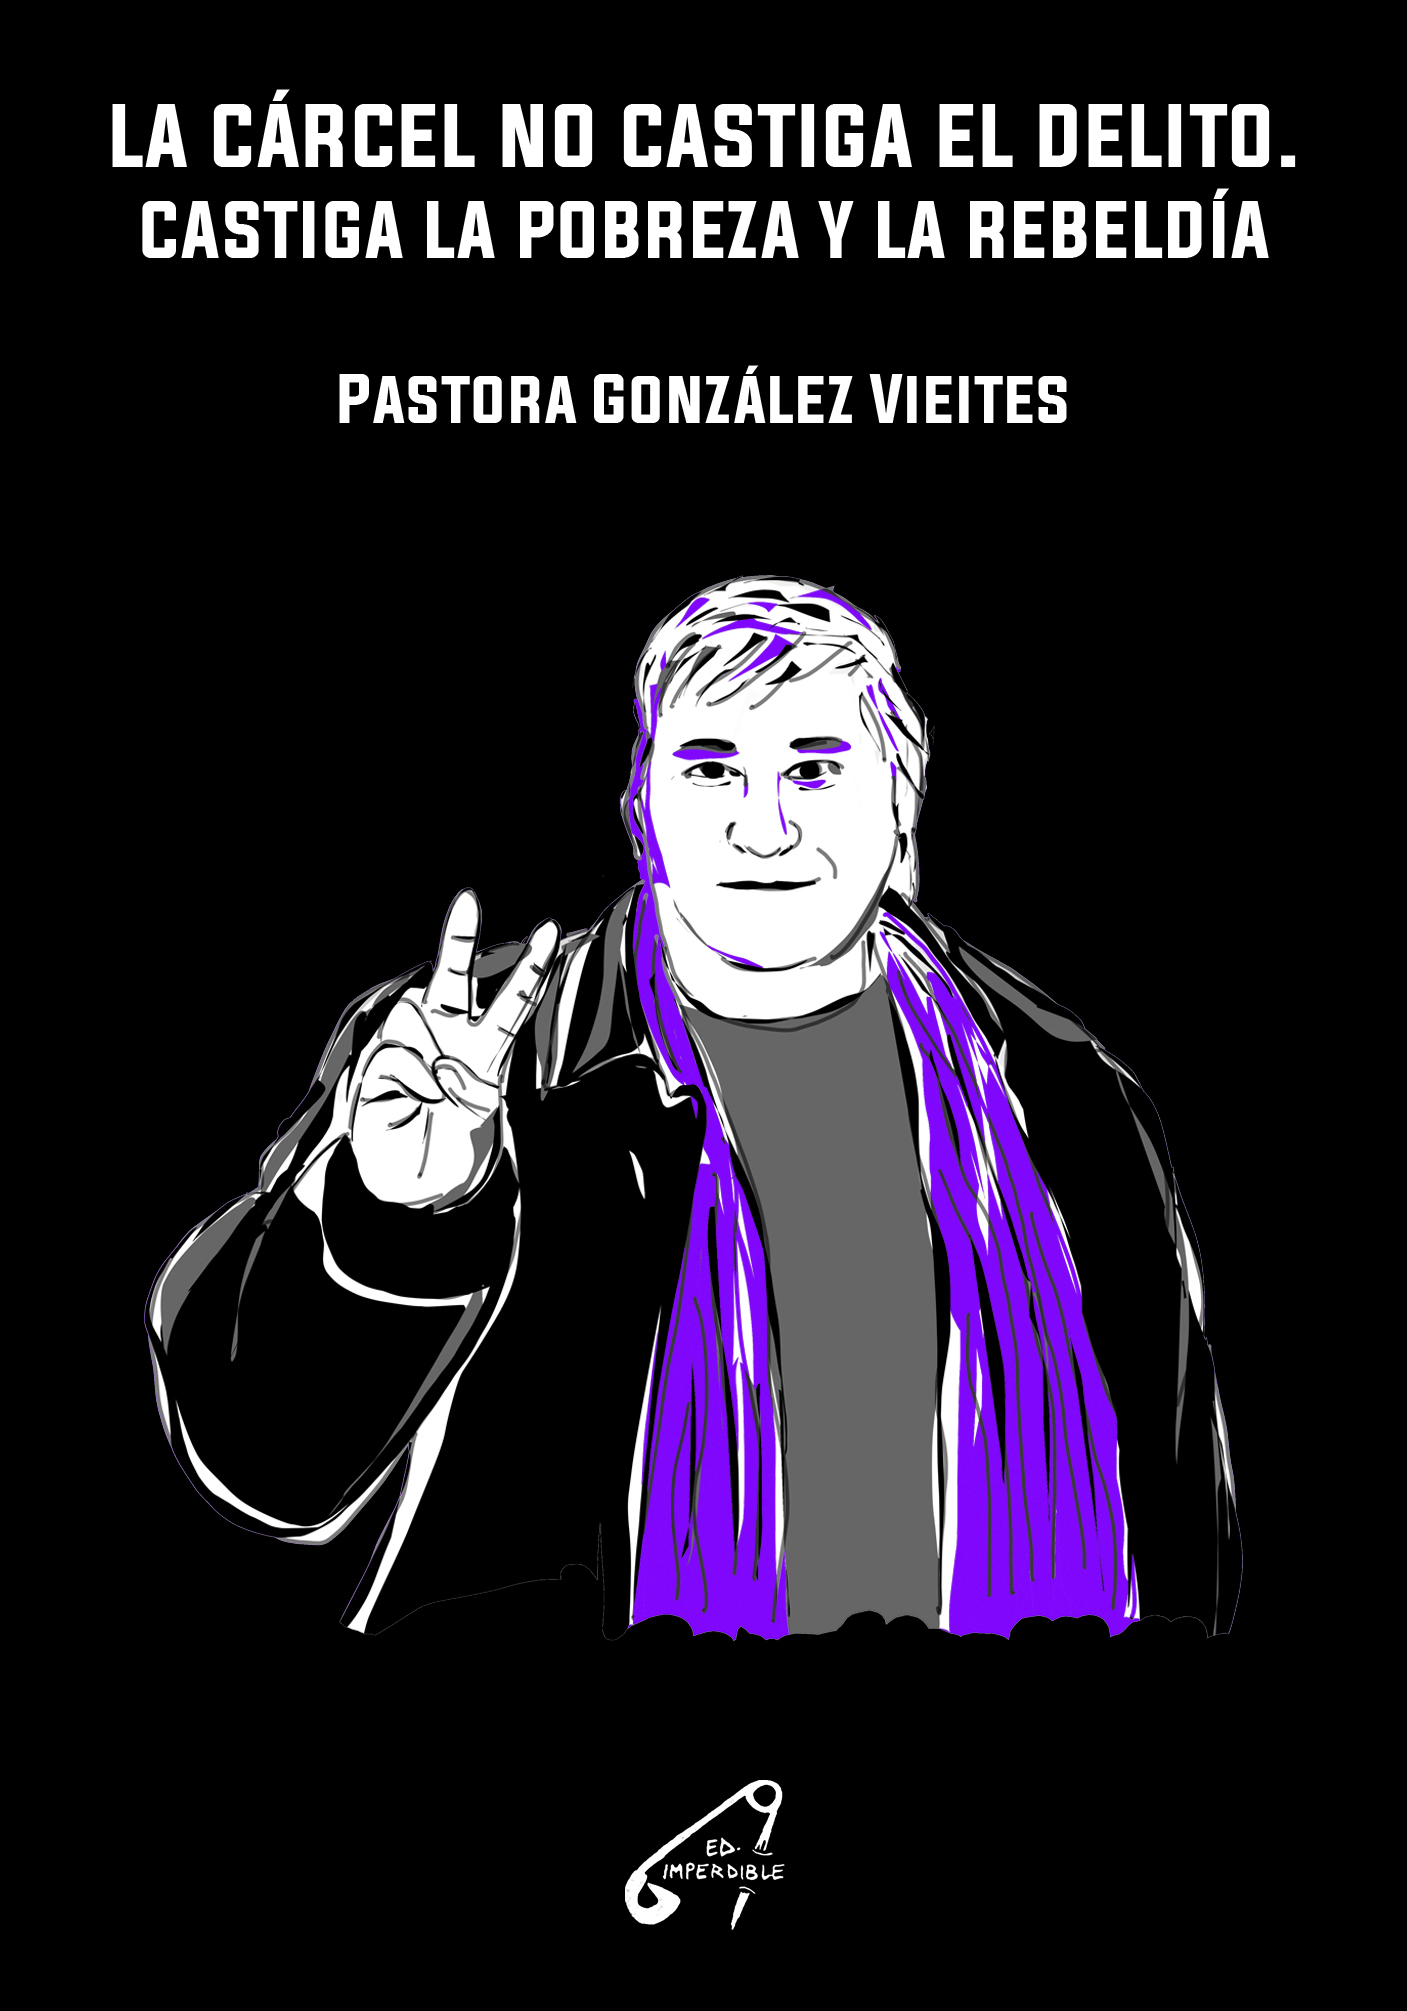 LA CÁRCEL NO CASTIGA EL DELITO - Pastora González Vieites